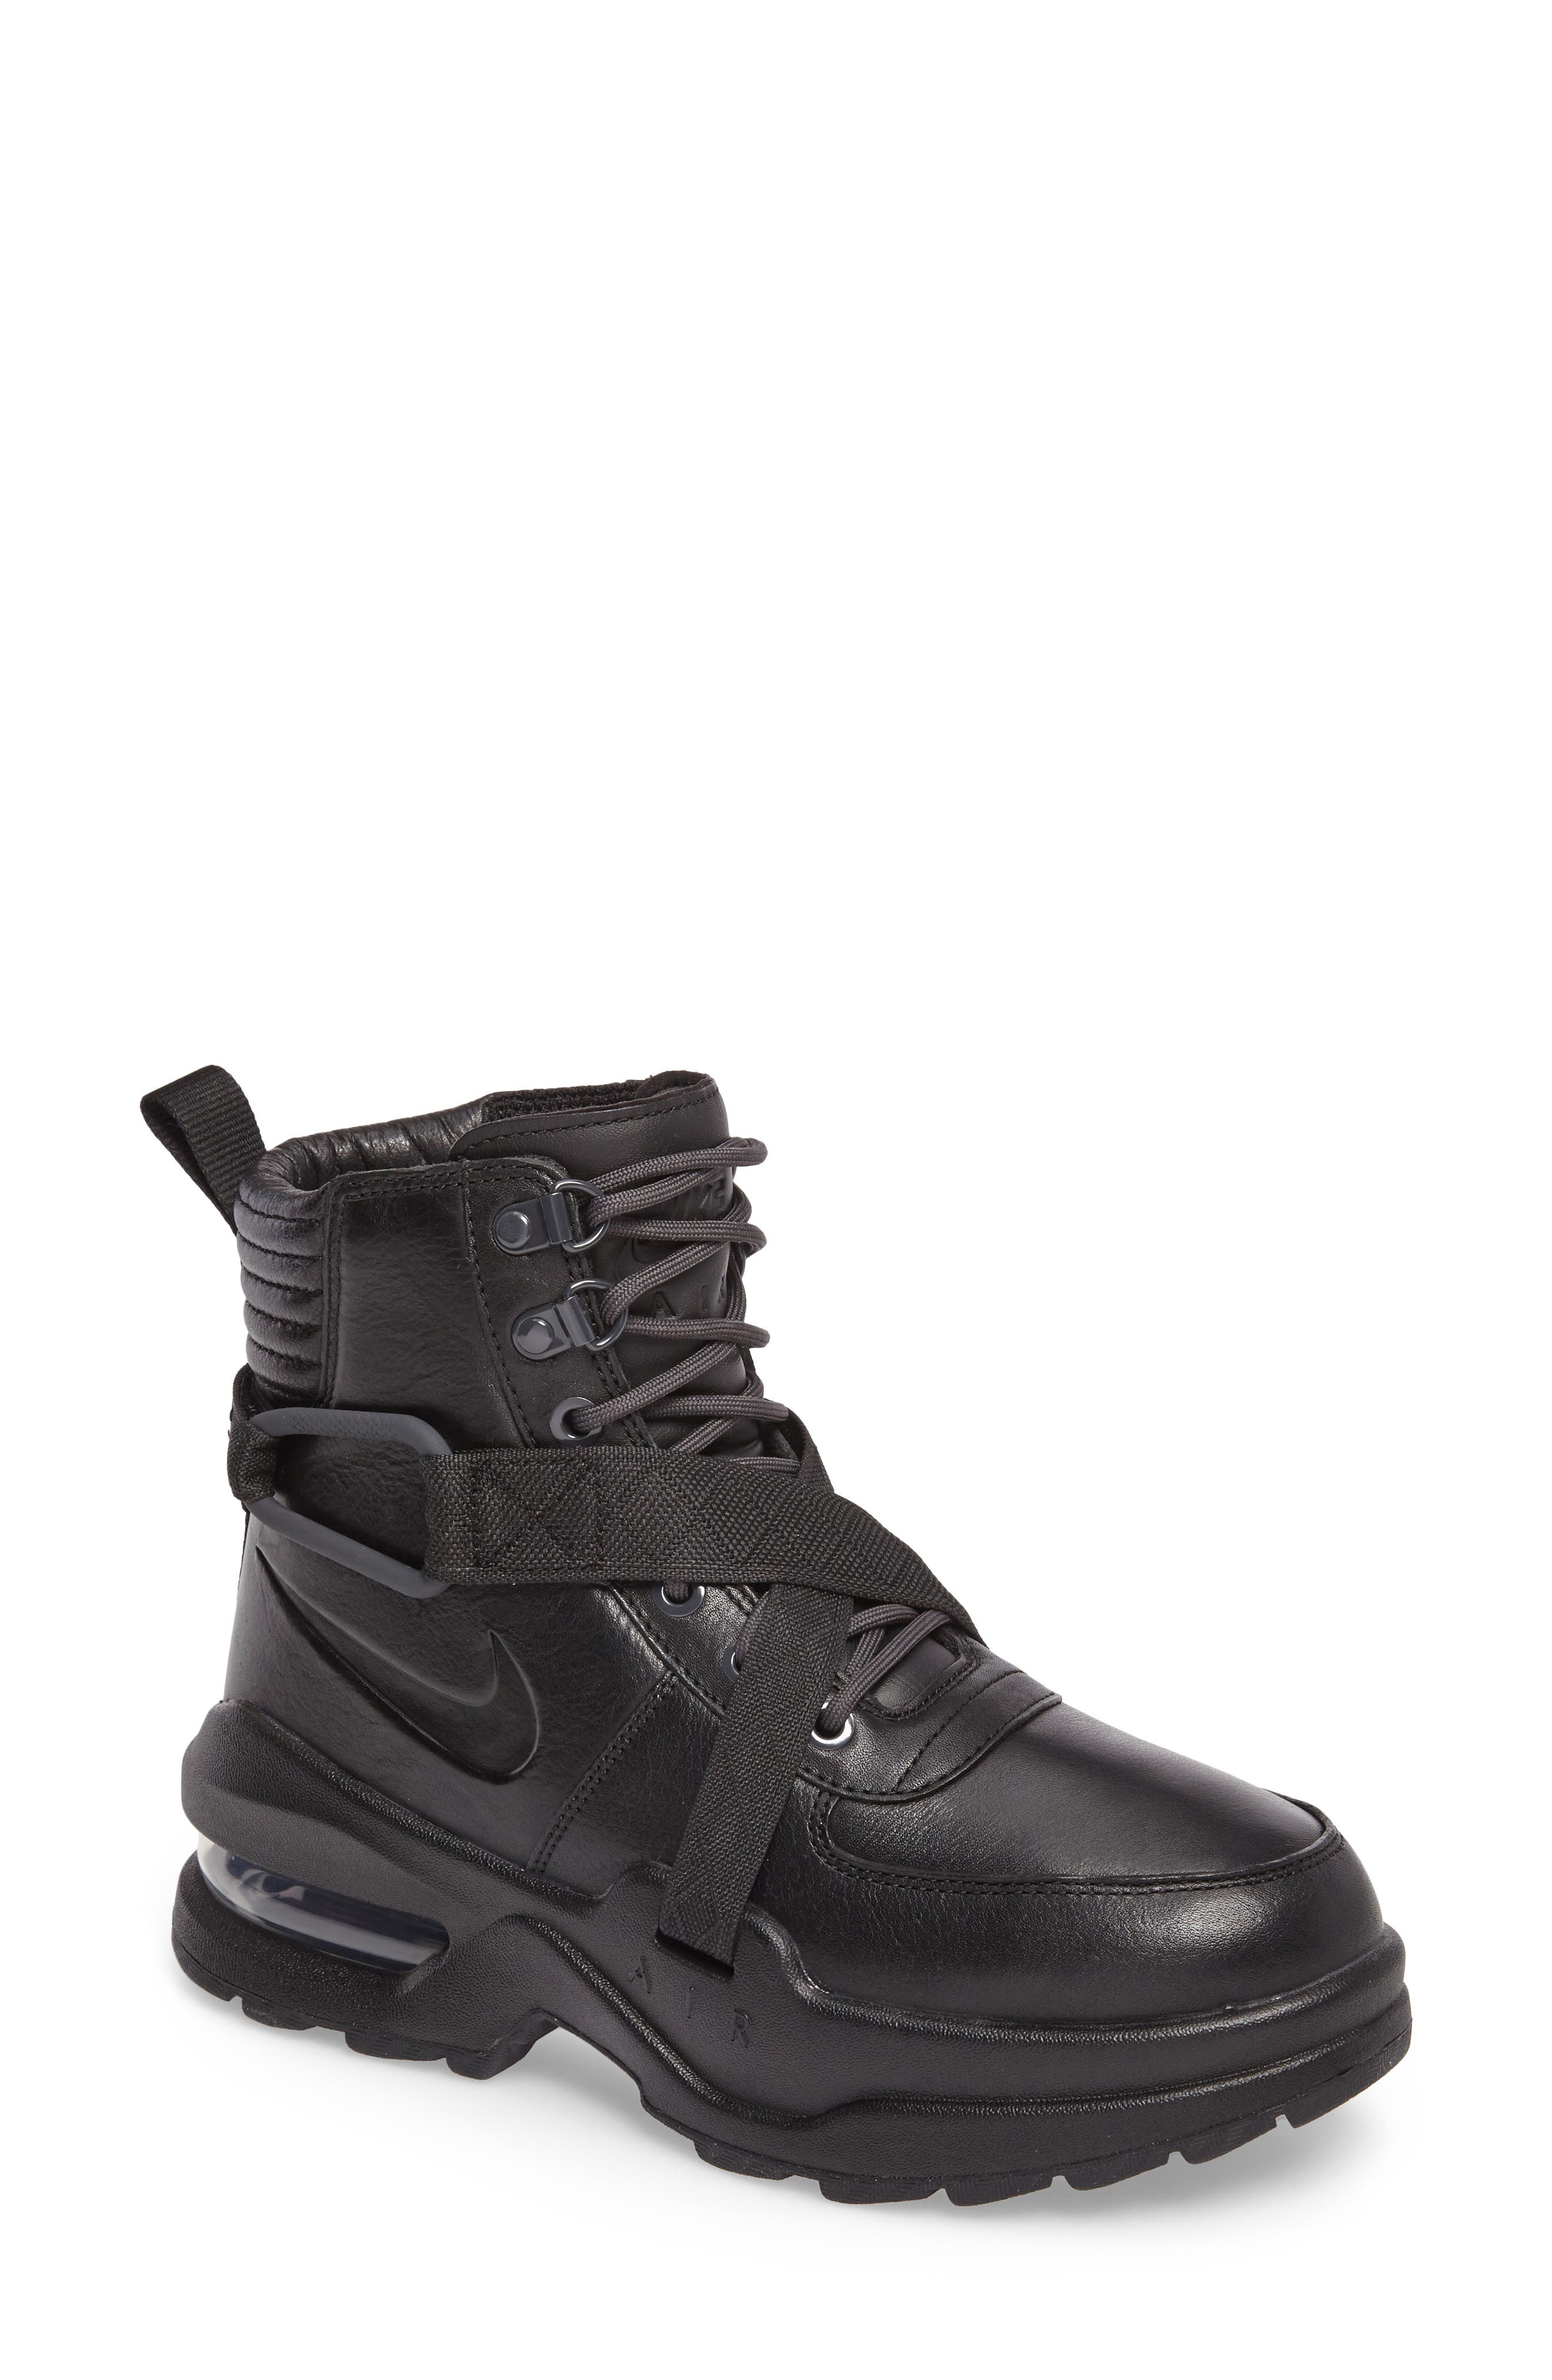 Nike Air Max Goadome Sneaker Boot 